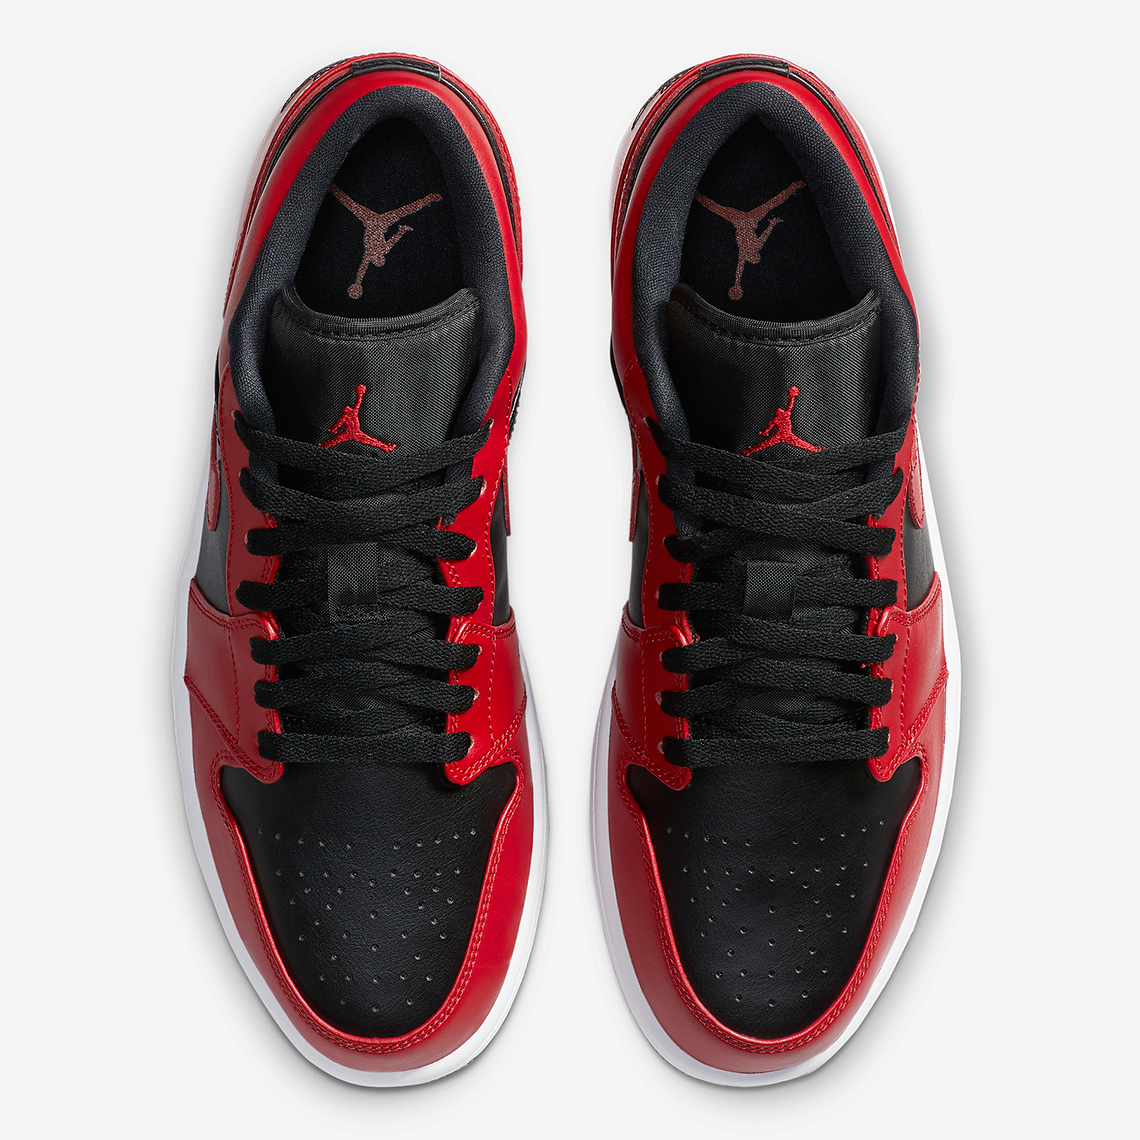 Air Jordan 1 Low Varsity Red Release Date 2020 | SneakerNews.com